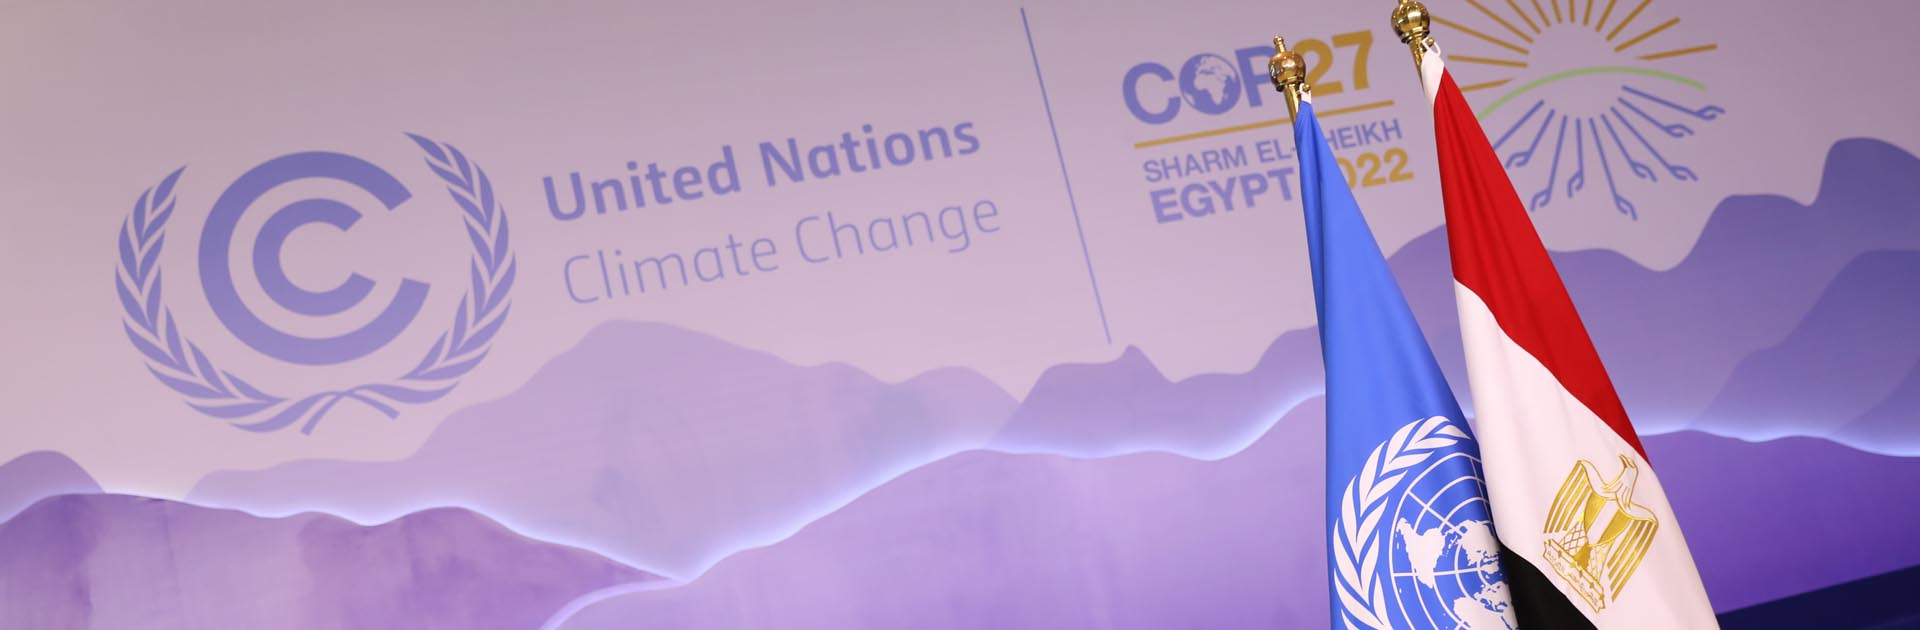 Imagen con los logos de la UNFCC y la COP27 en Sharm el Sheij con las banderas de la ONU y Egipto, país organizador de la COP